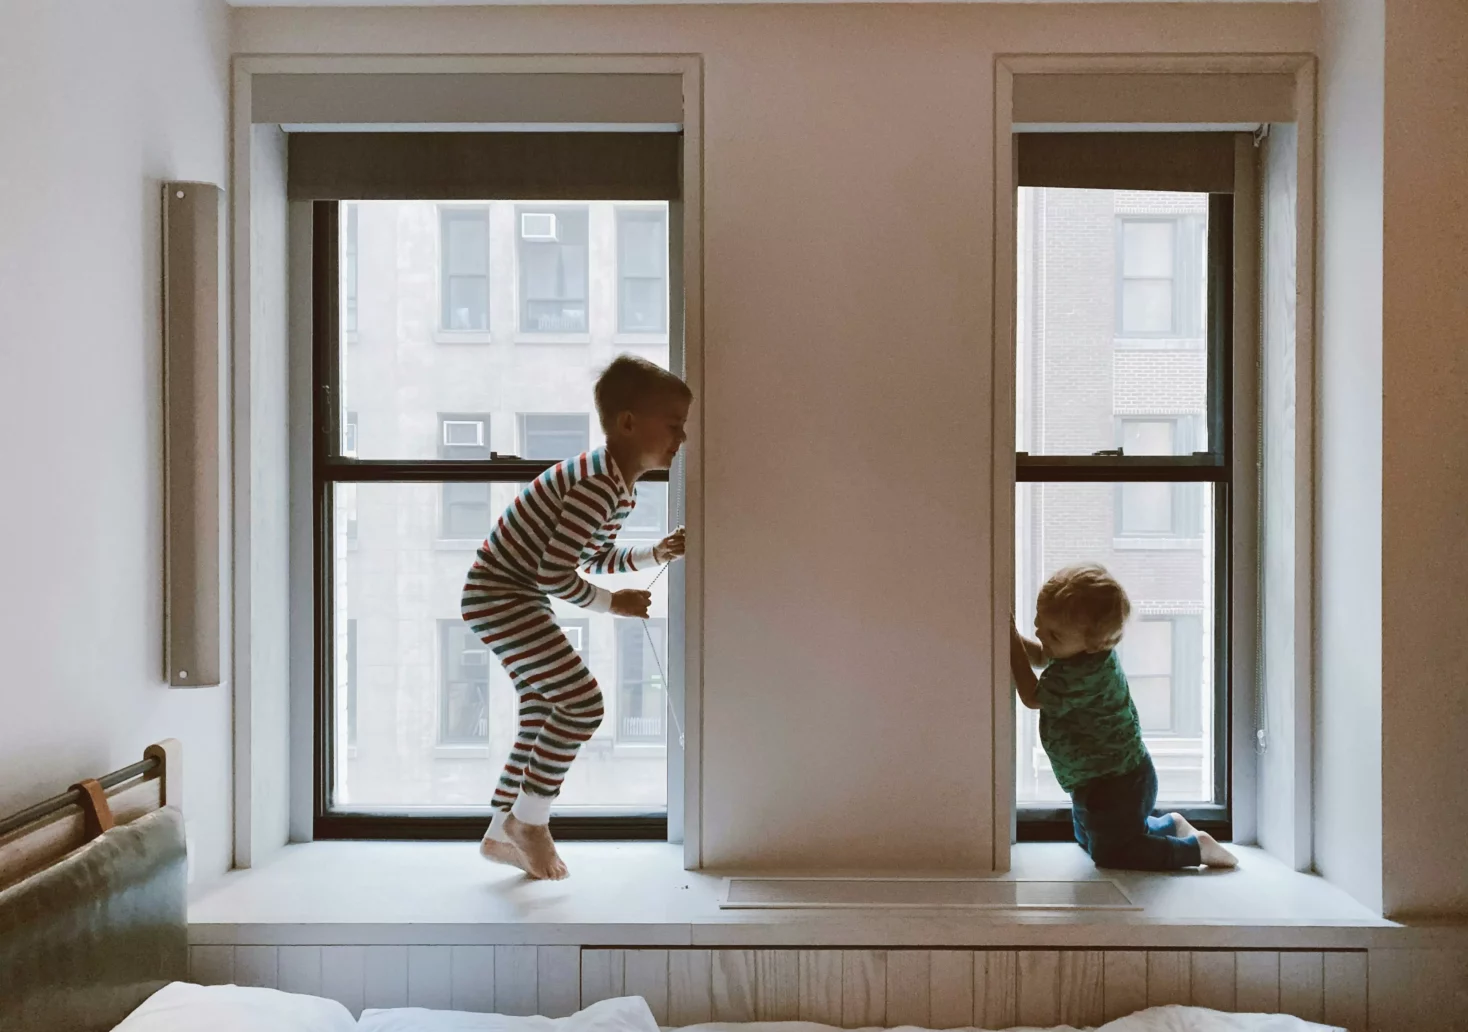 Bild auf 5min.at zeigt zwei Kinder beim Spielen vorm Fenster